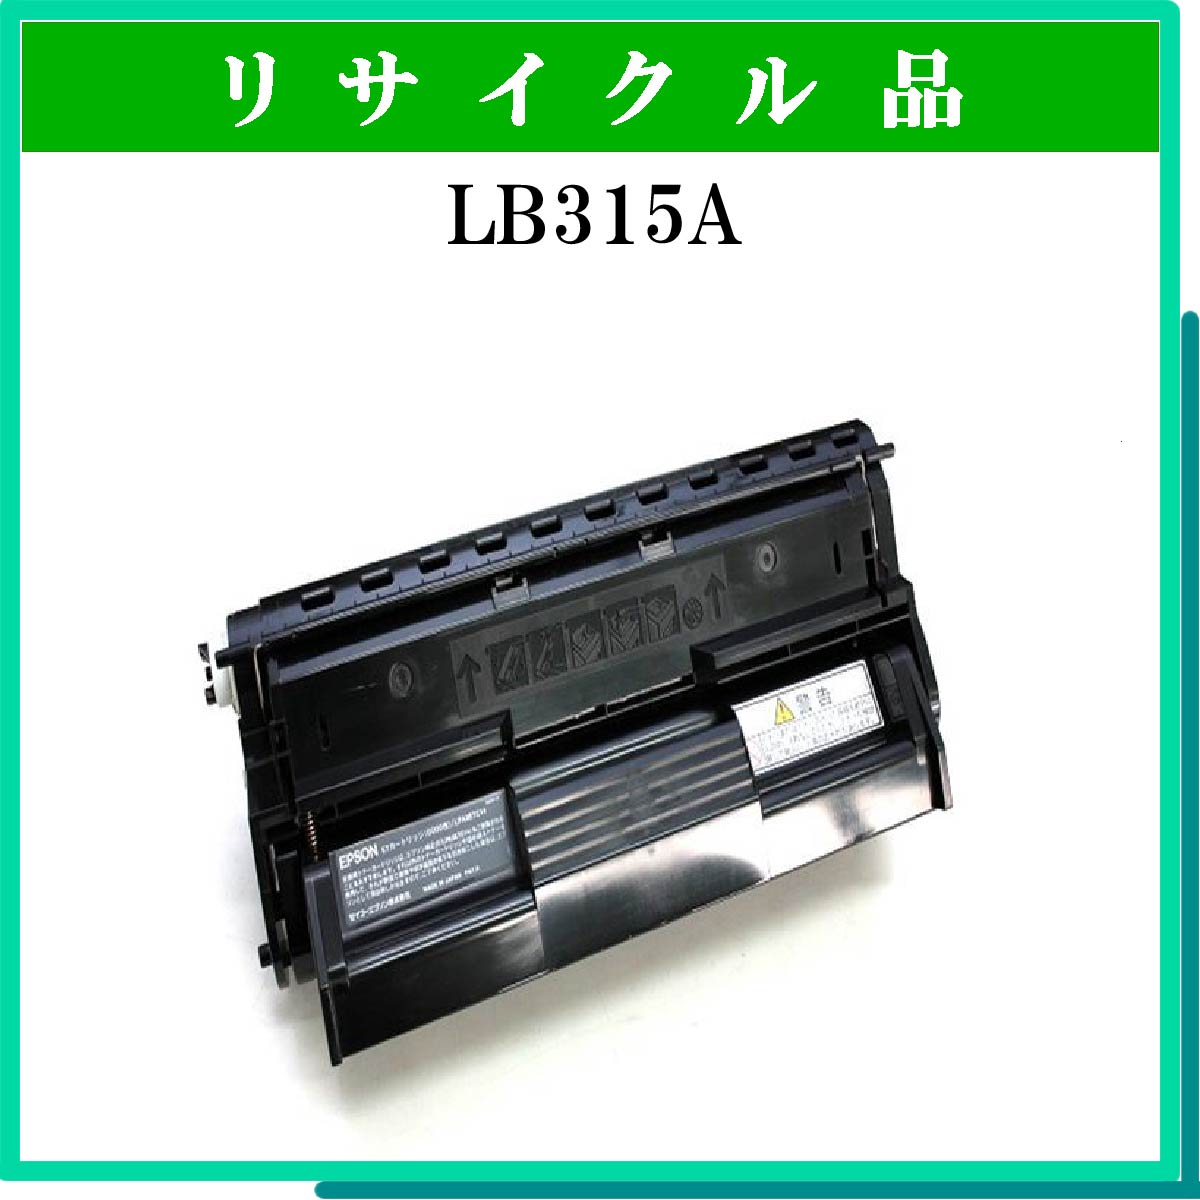 LB315A